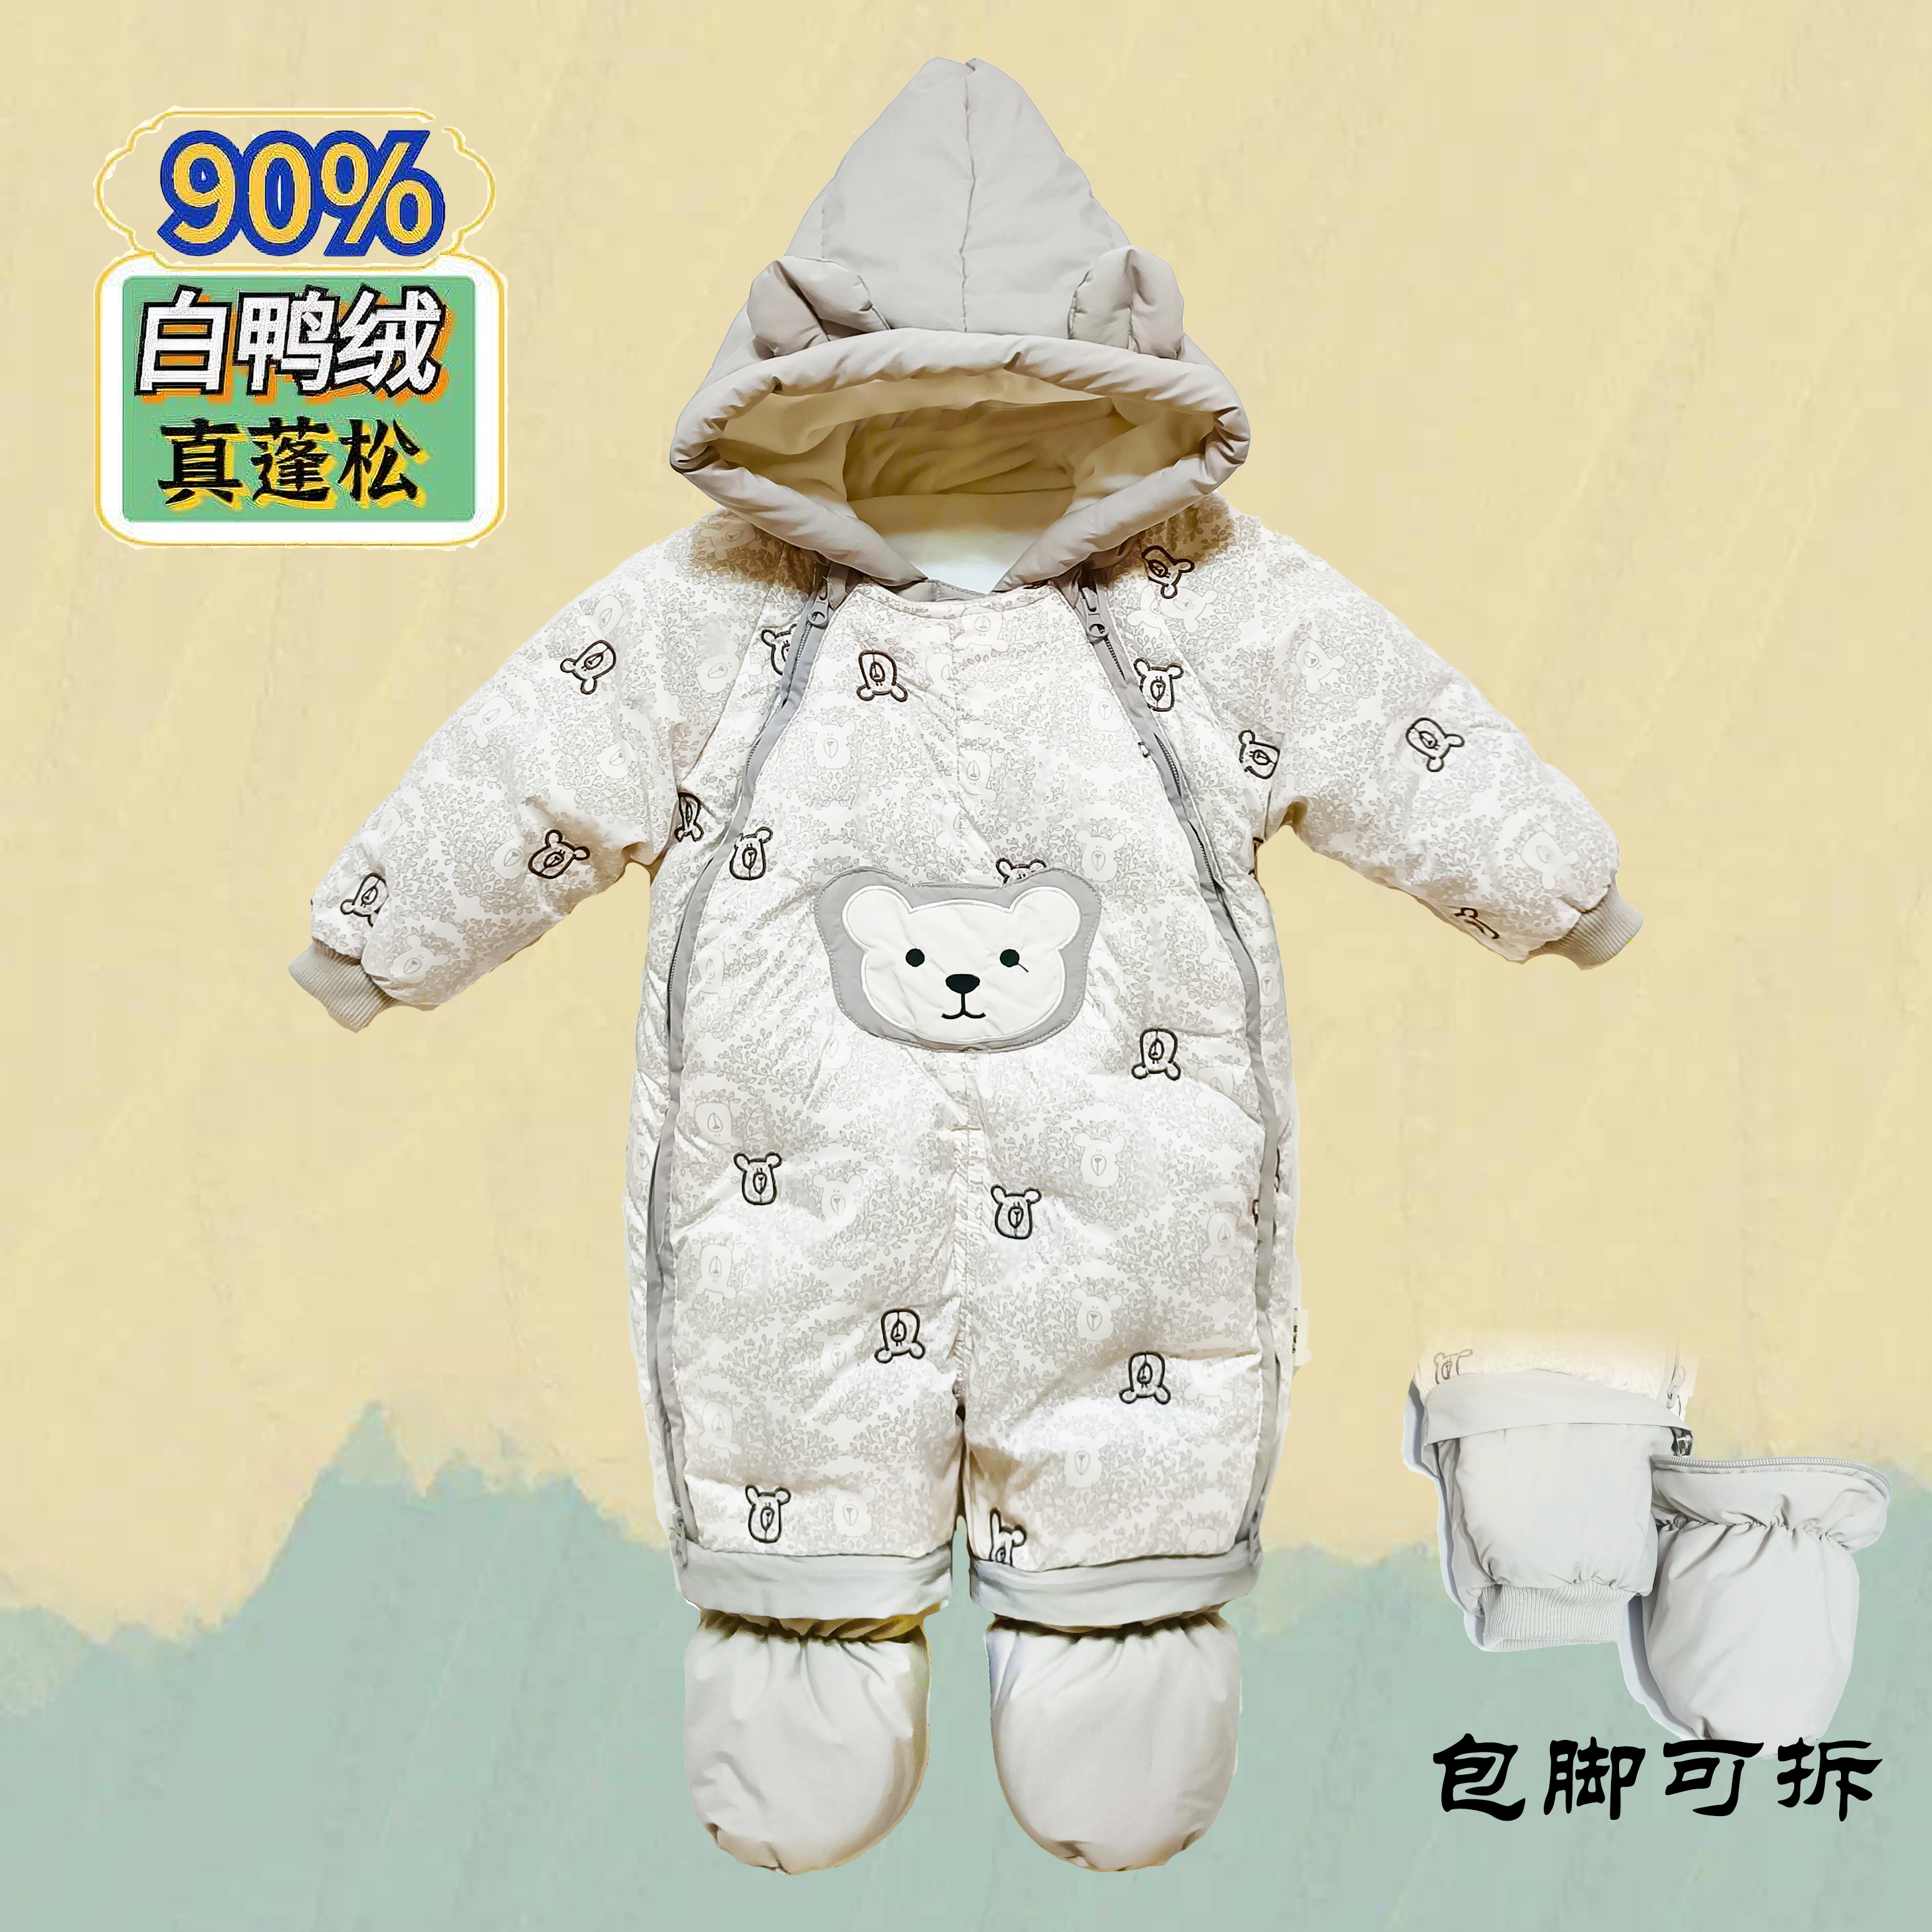 婴儿羽绒服连体衣抱被白鸭绒冬季衣宝宝加厚新生儿包脚防风外套装